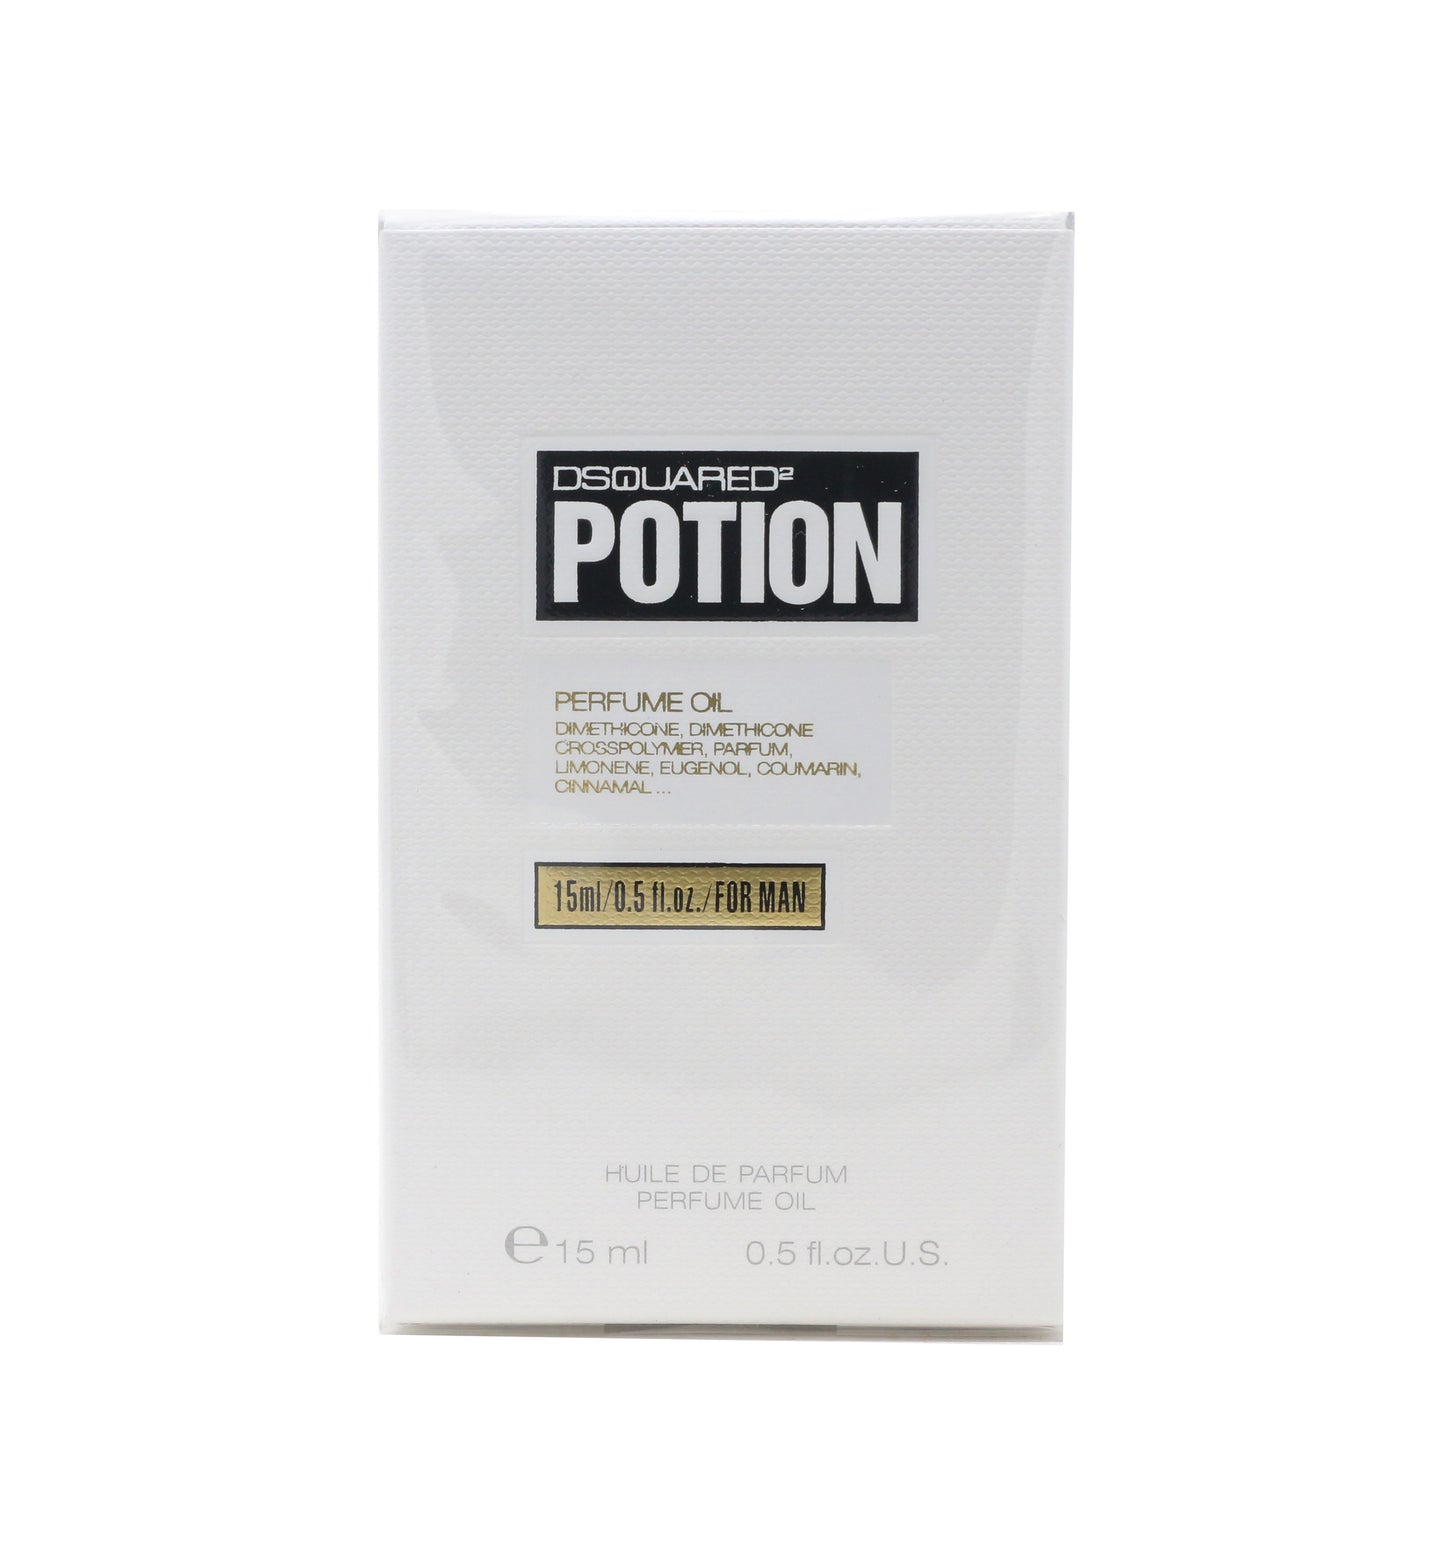 Potion by Dsquared2 Perfume Oil For Men 0.5oz/15ml Splash New In Box